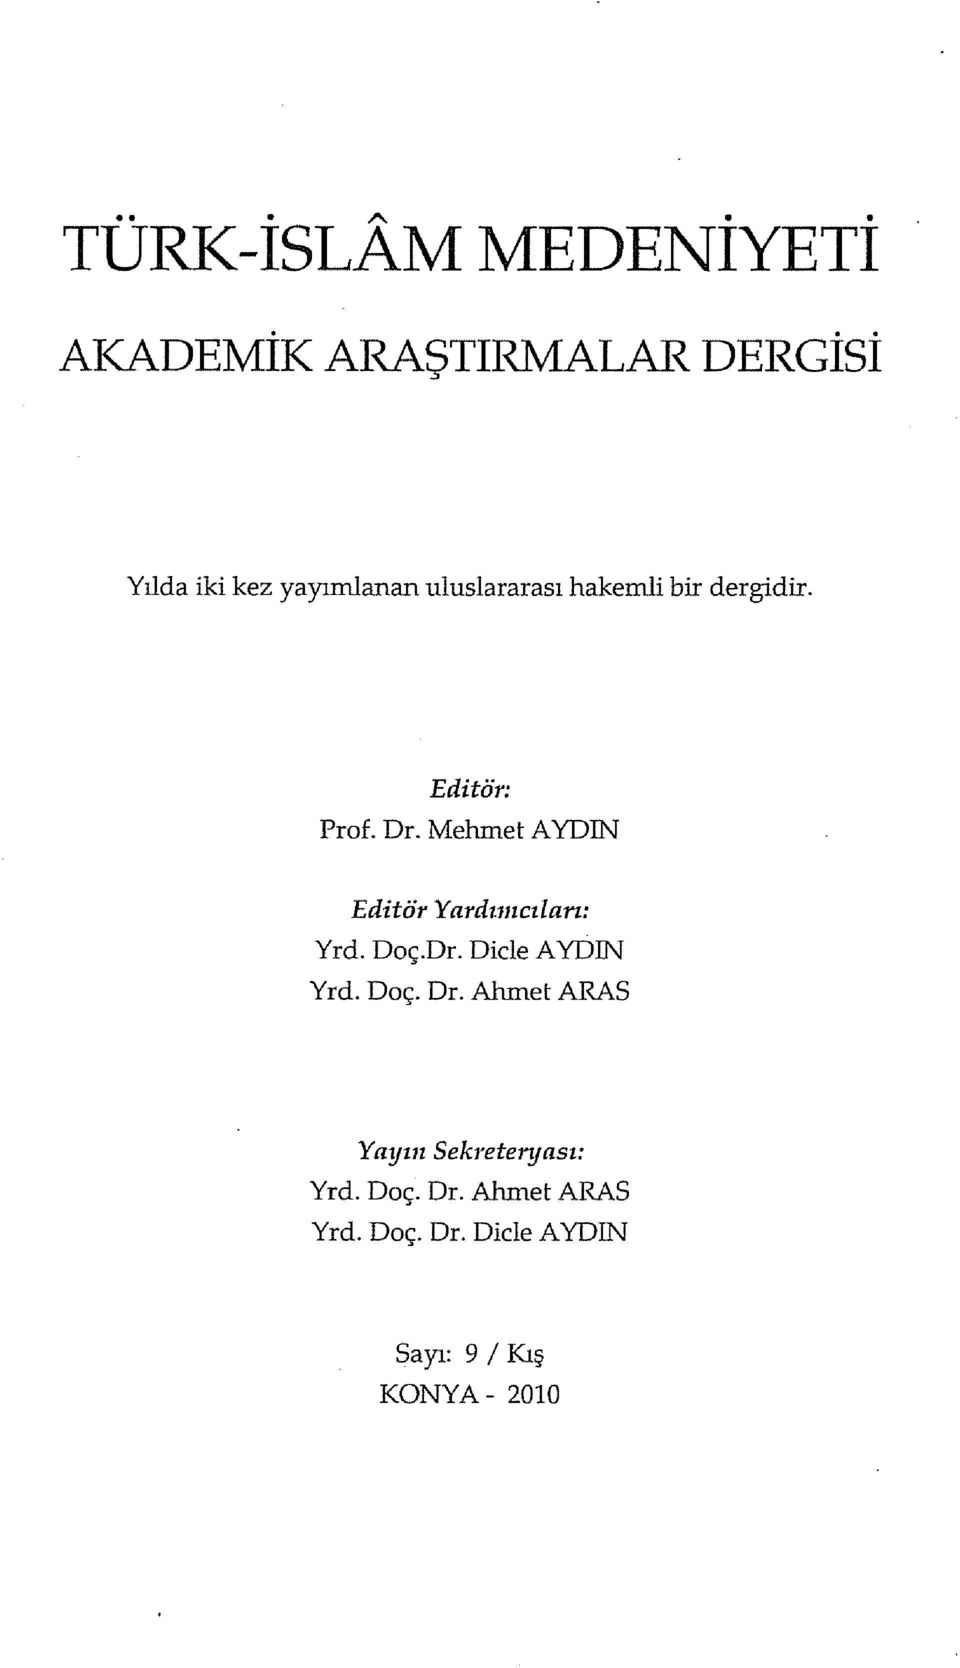 hakemli bir dergidir. Editör: Prof. Dr. MehmetAYDIN Editör Yardımcıları: Yrd.